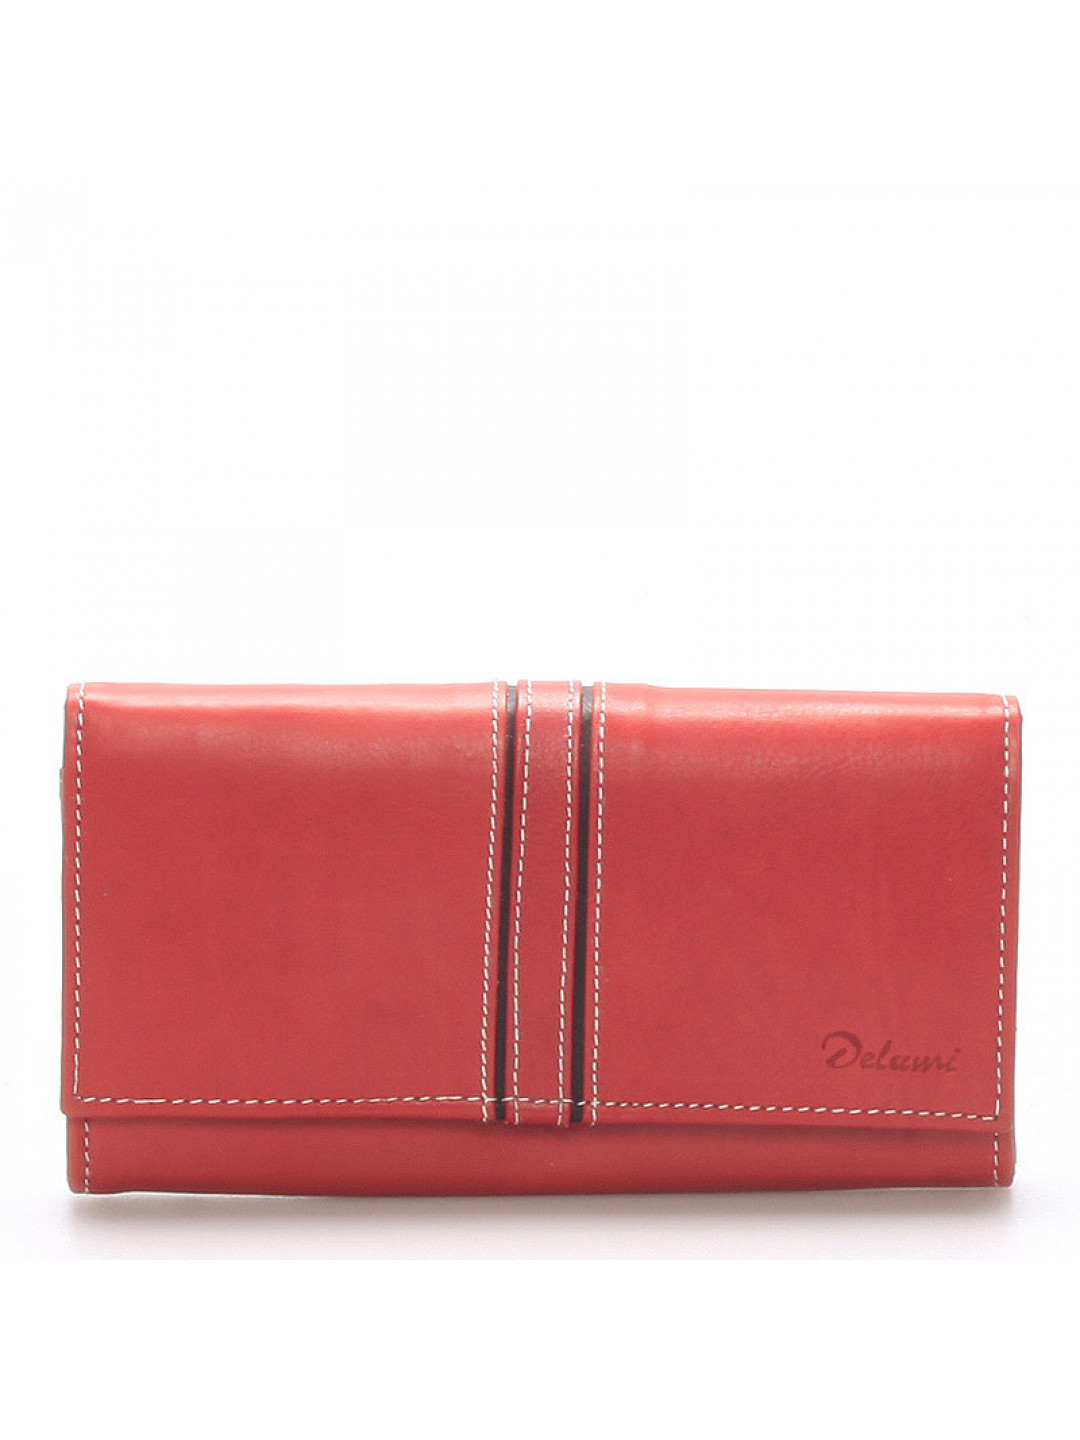 Dámská kožená peněženka Delami Carla červená